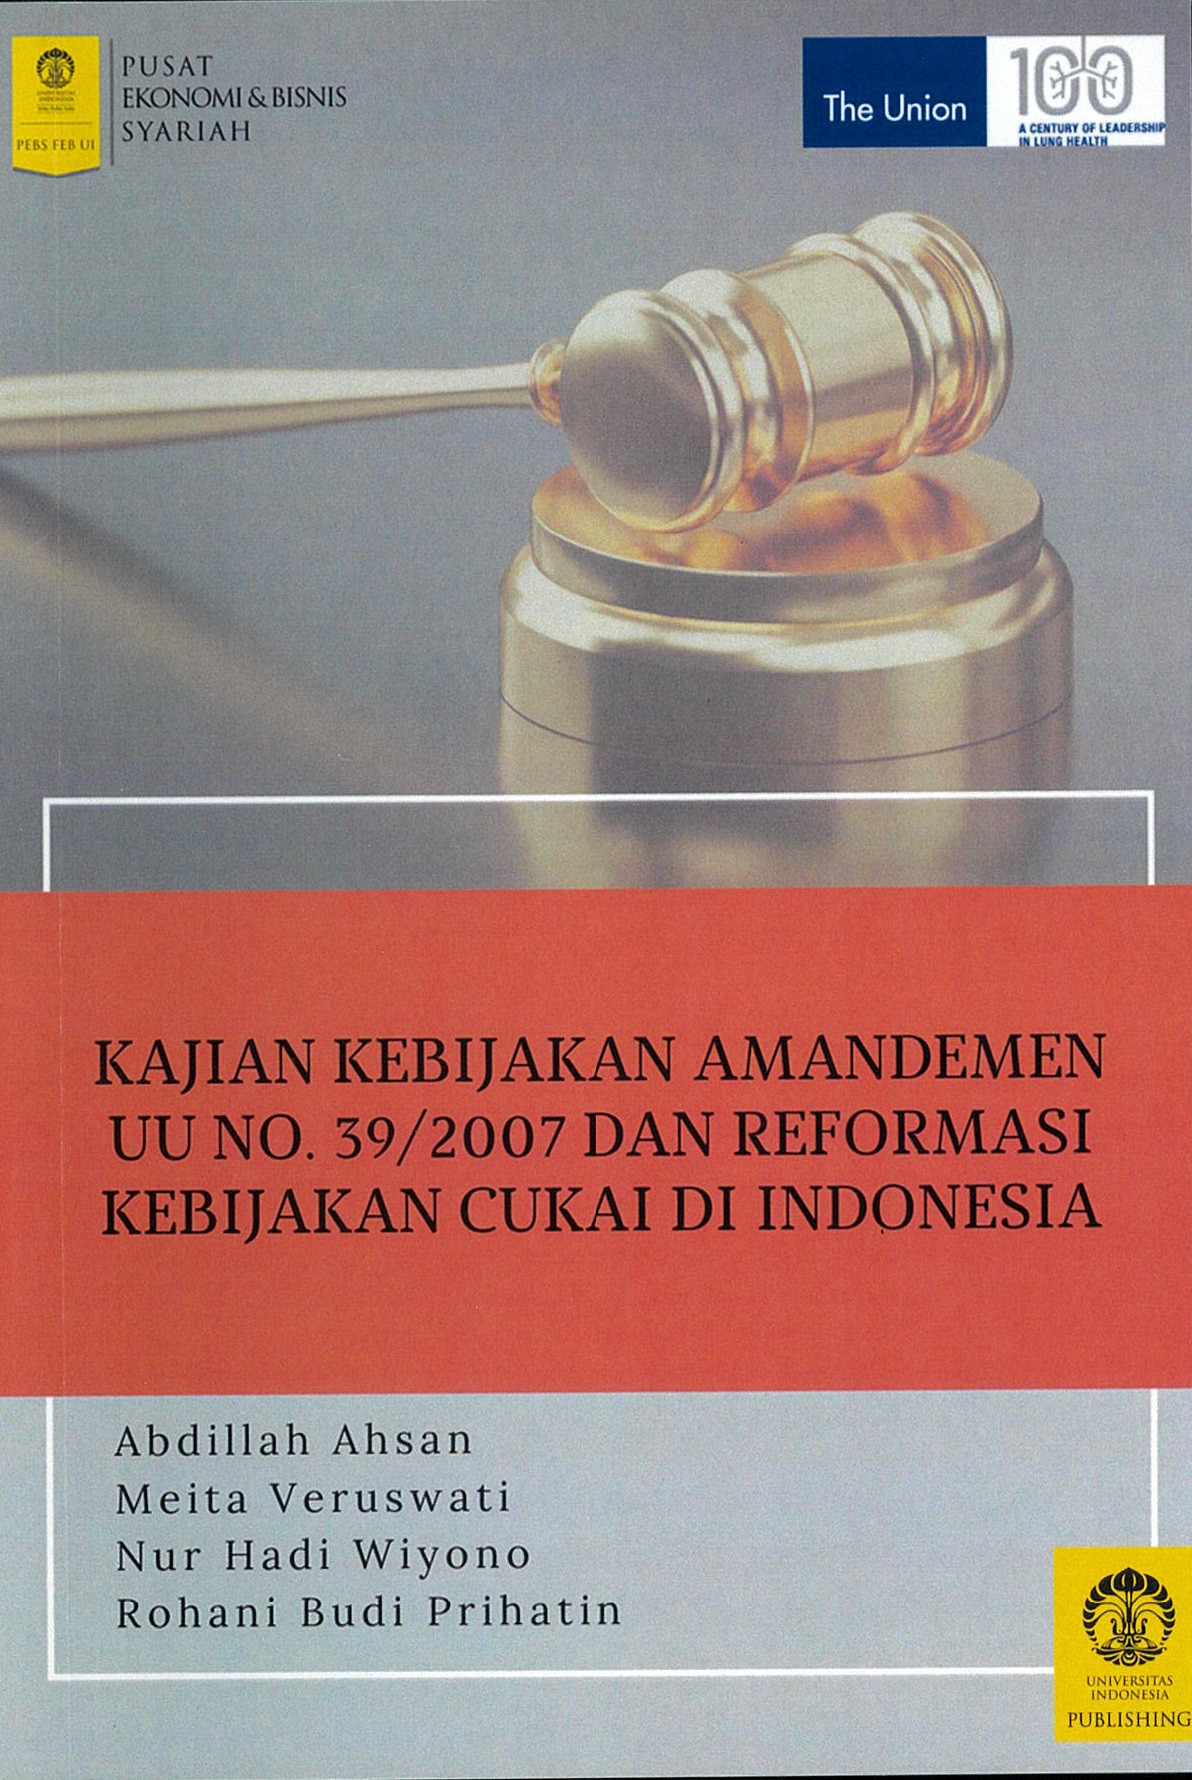 Kajian kebijakan amandemen UU No. 39/2007 dan reformasi kebijakan cukai di Indonesia